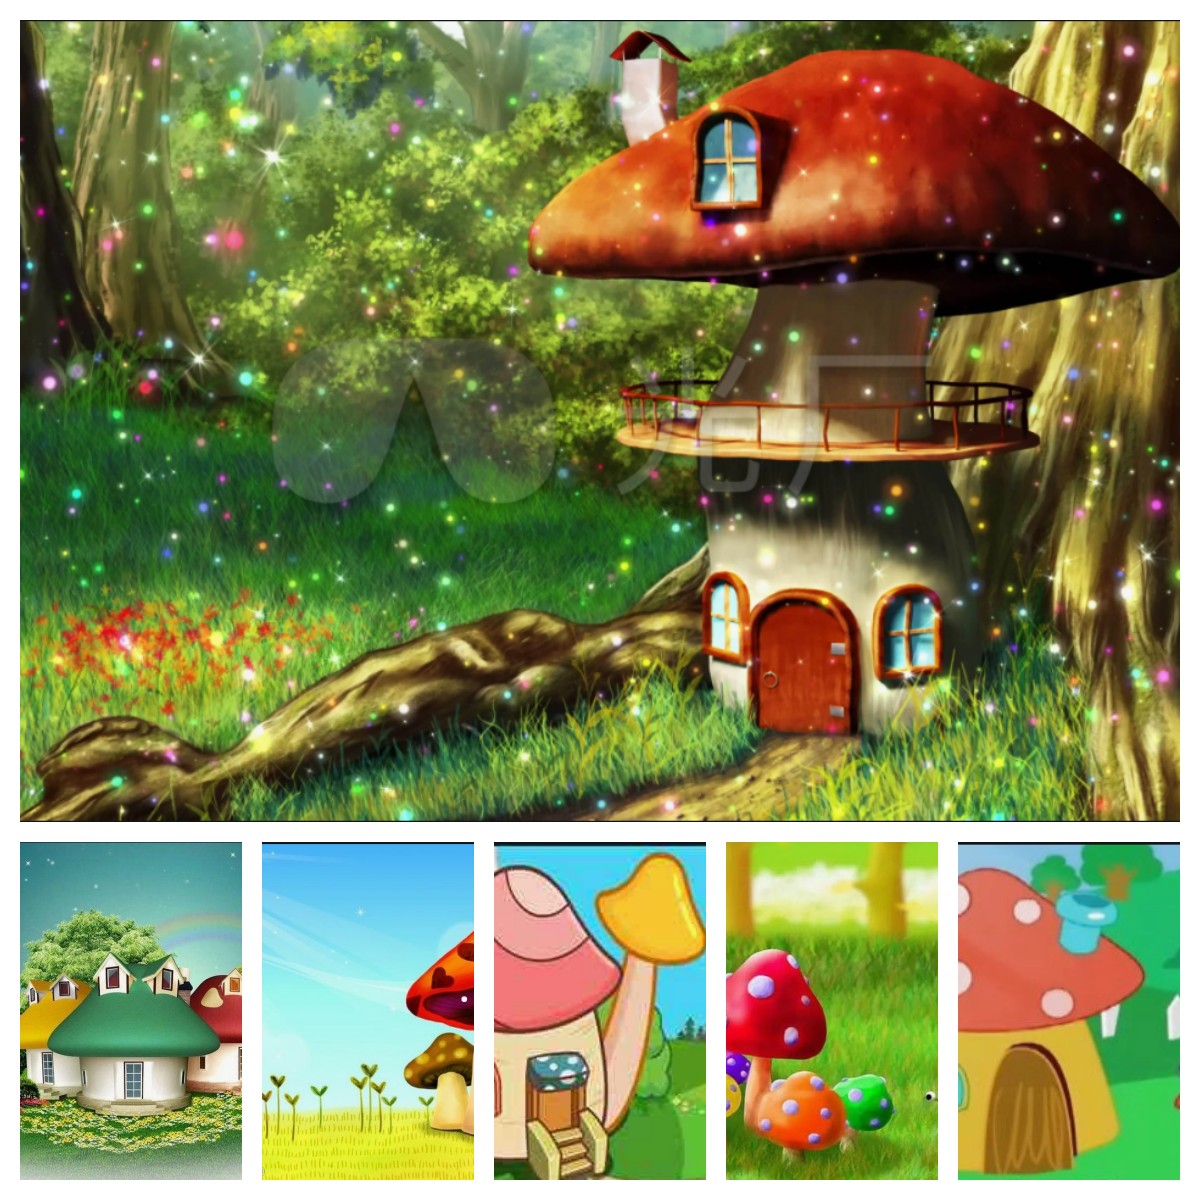 稻草工艺品；卡通人、物稻草人、仿真绿植雕塑创意制作。蘑菇房子